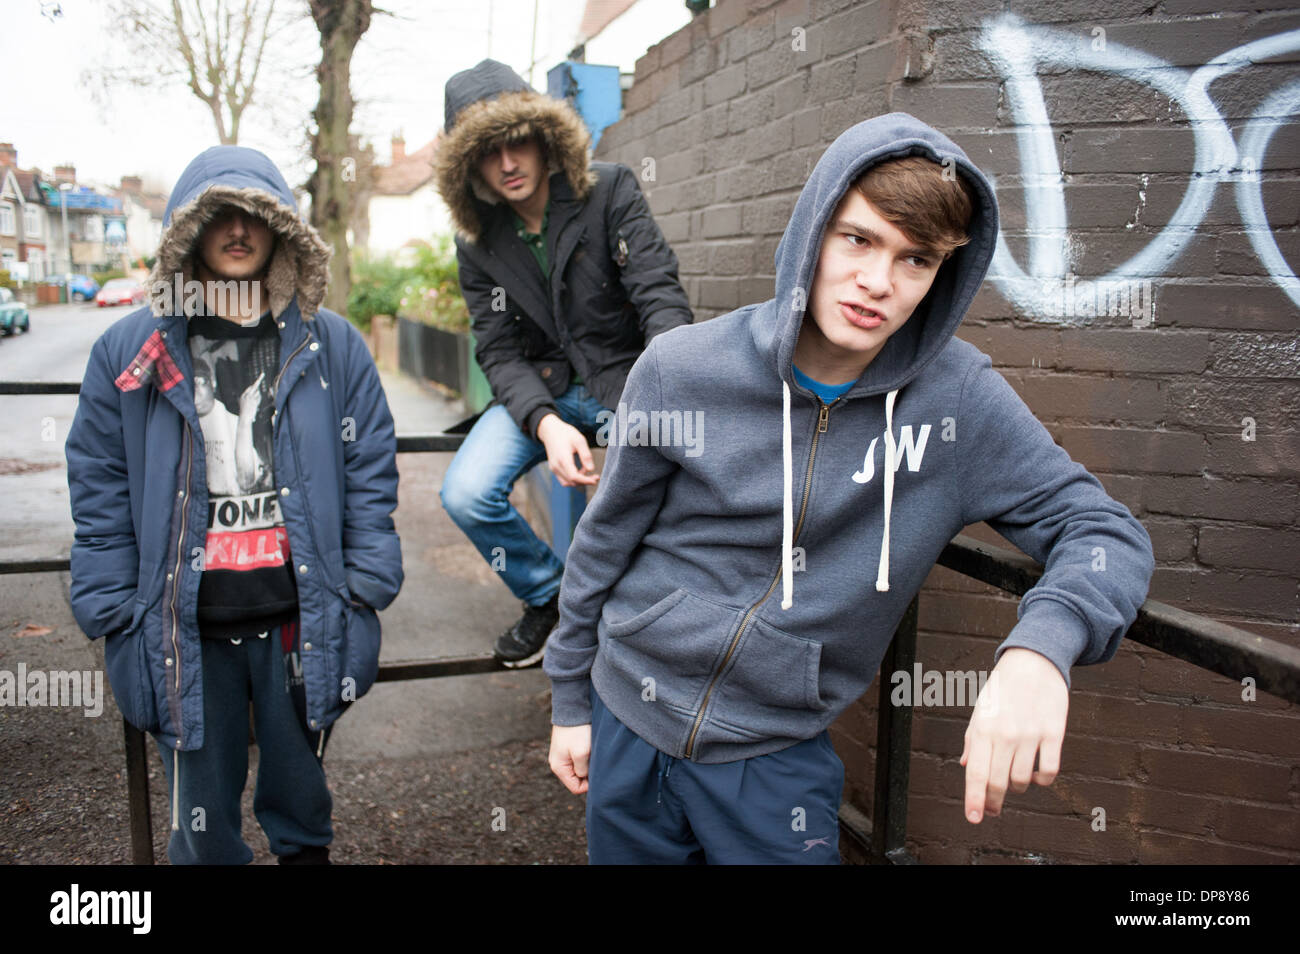 Un gruppo di ragazzi adolescenti in giro chiacchiere su un angolo di strada cercando intimidatorio e minaccioso. Foto Stock